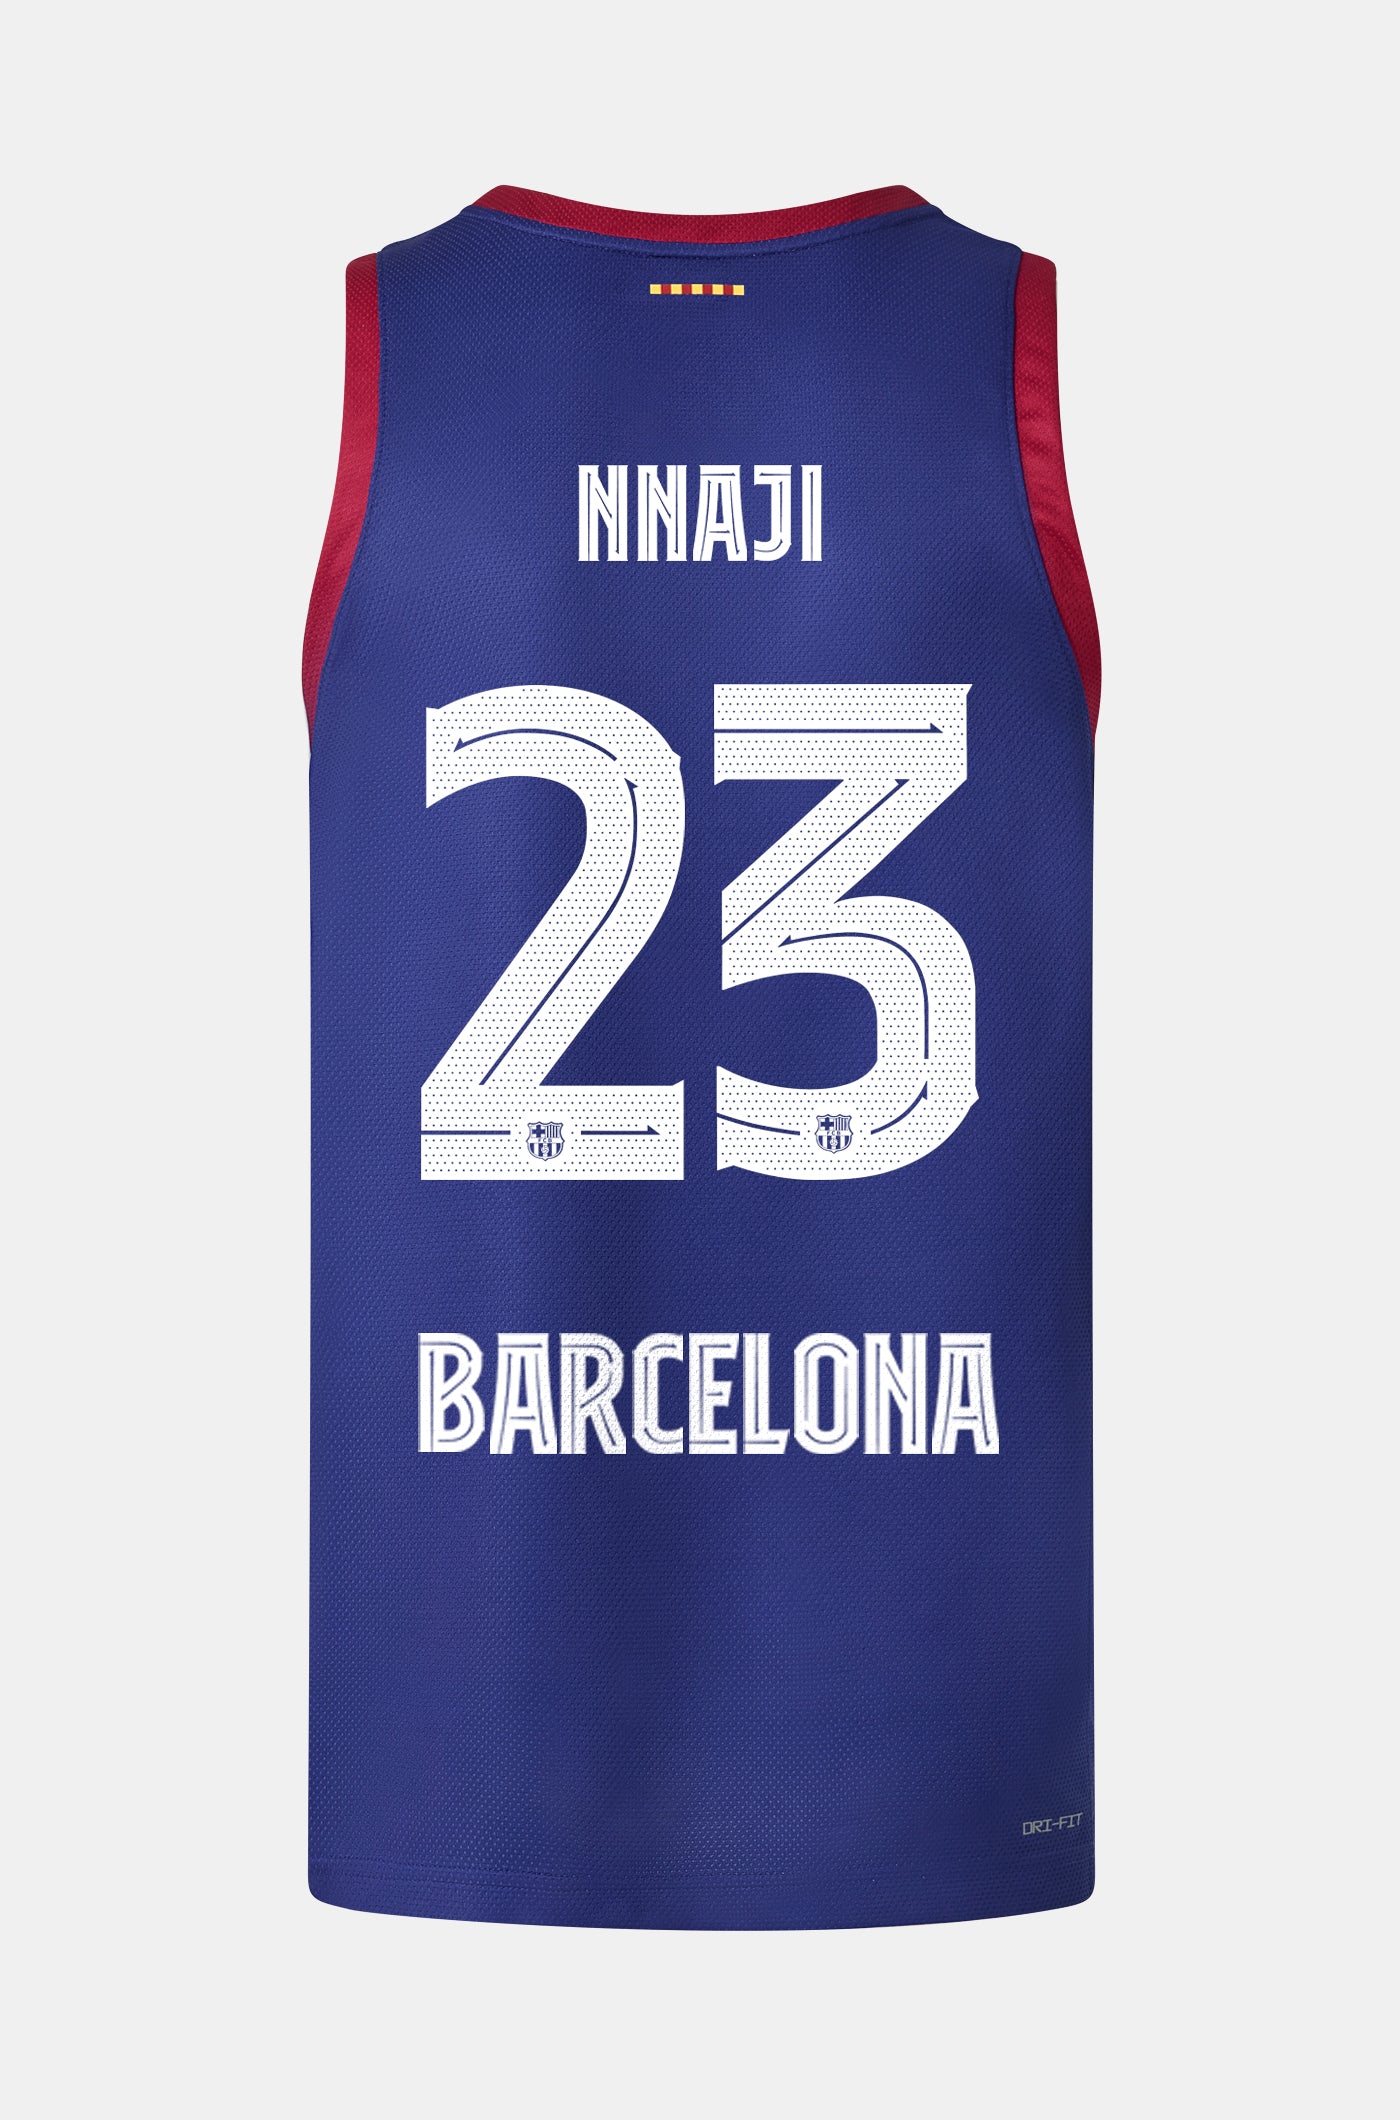 Euroleague FC Barcelona home basketball shirt 23/24 - NNAJI